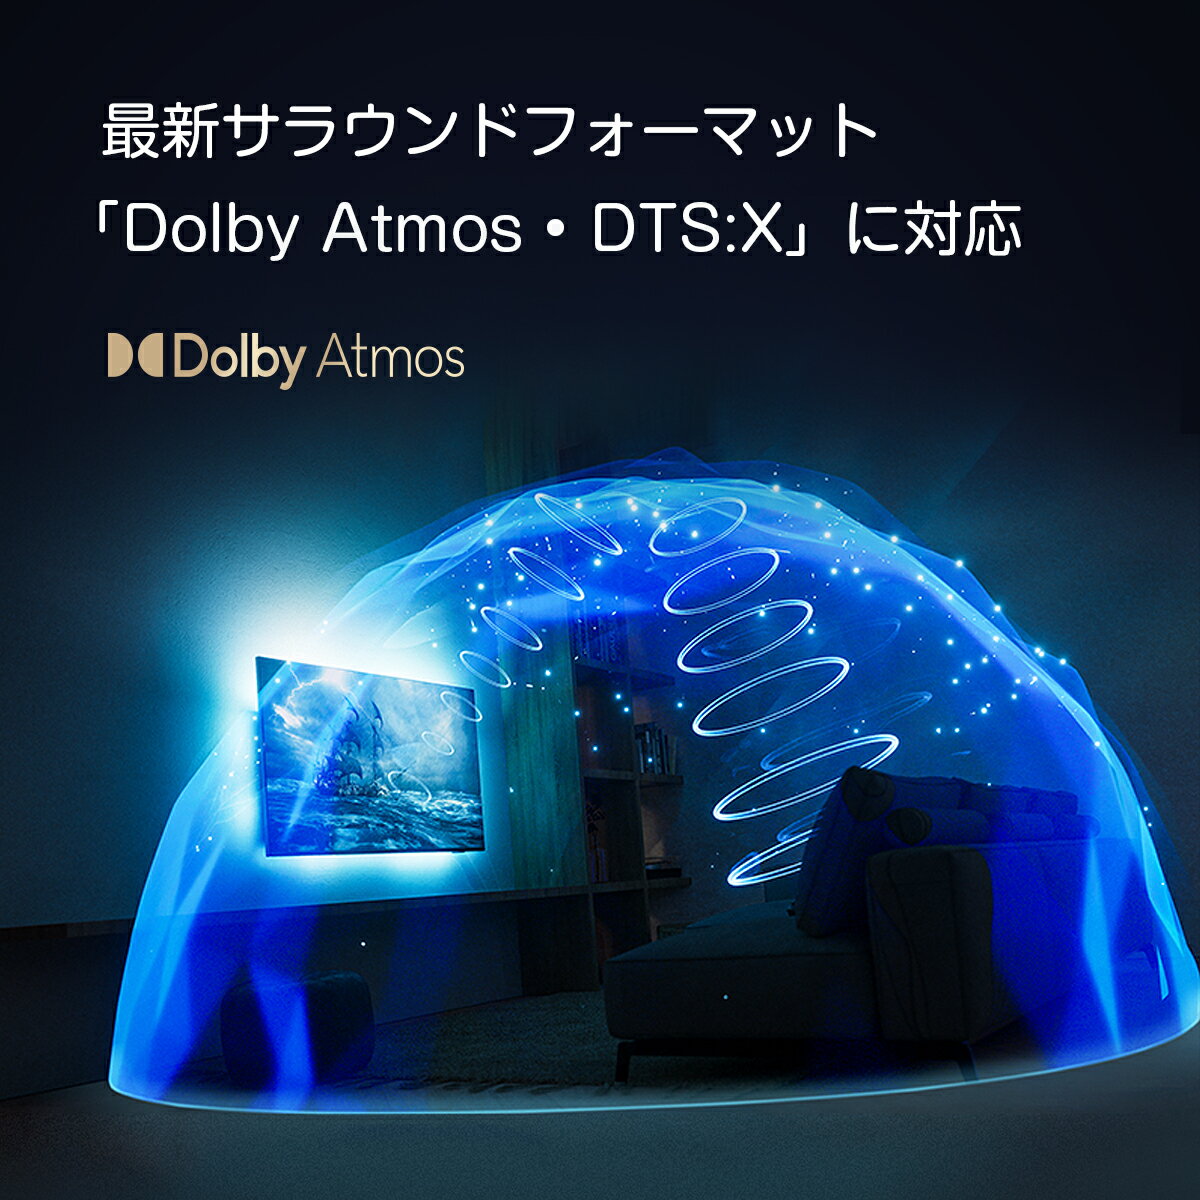 サウンドバー Philips FB1 フィリップス スピーカー テレビ用 IMAX Enhanced対応 Dolby Atmos対応 Bluetooth付き HDMI スマートフォン パソコン ノートバソコン スマホ iPhone Apple ipad AirPlay TV pc タブレット 7.2.1ch 高音質 ホームシアター 3